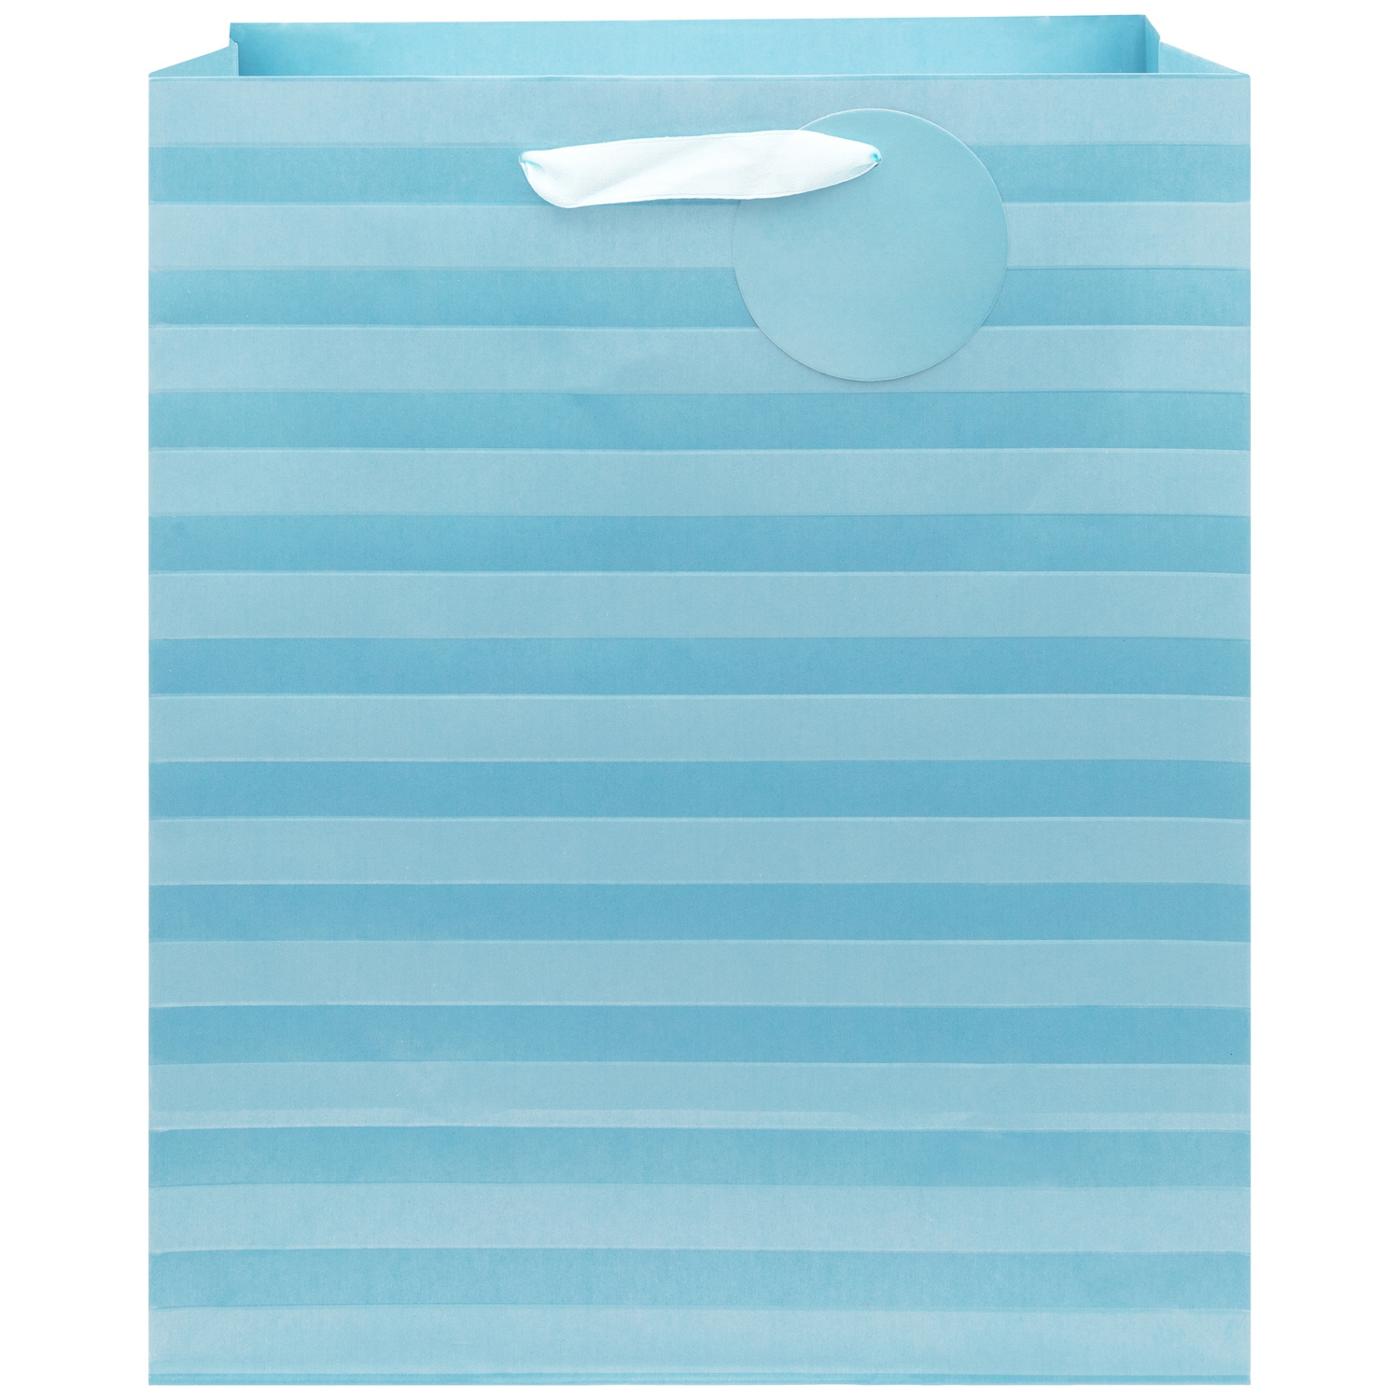 IG Design Metallic Stripes Paper Gift Bag - Blue; image 1 of 2